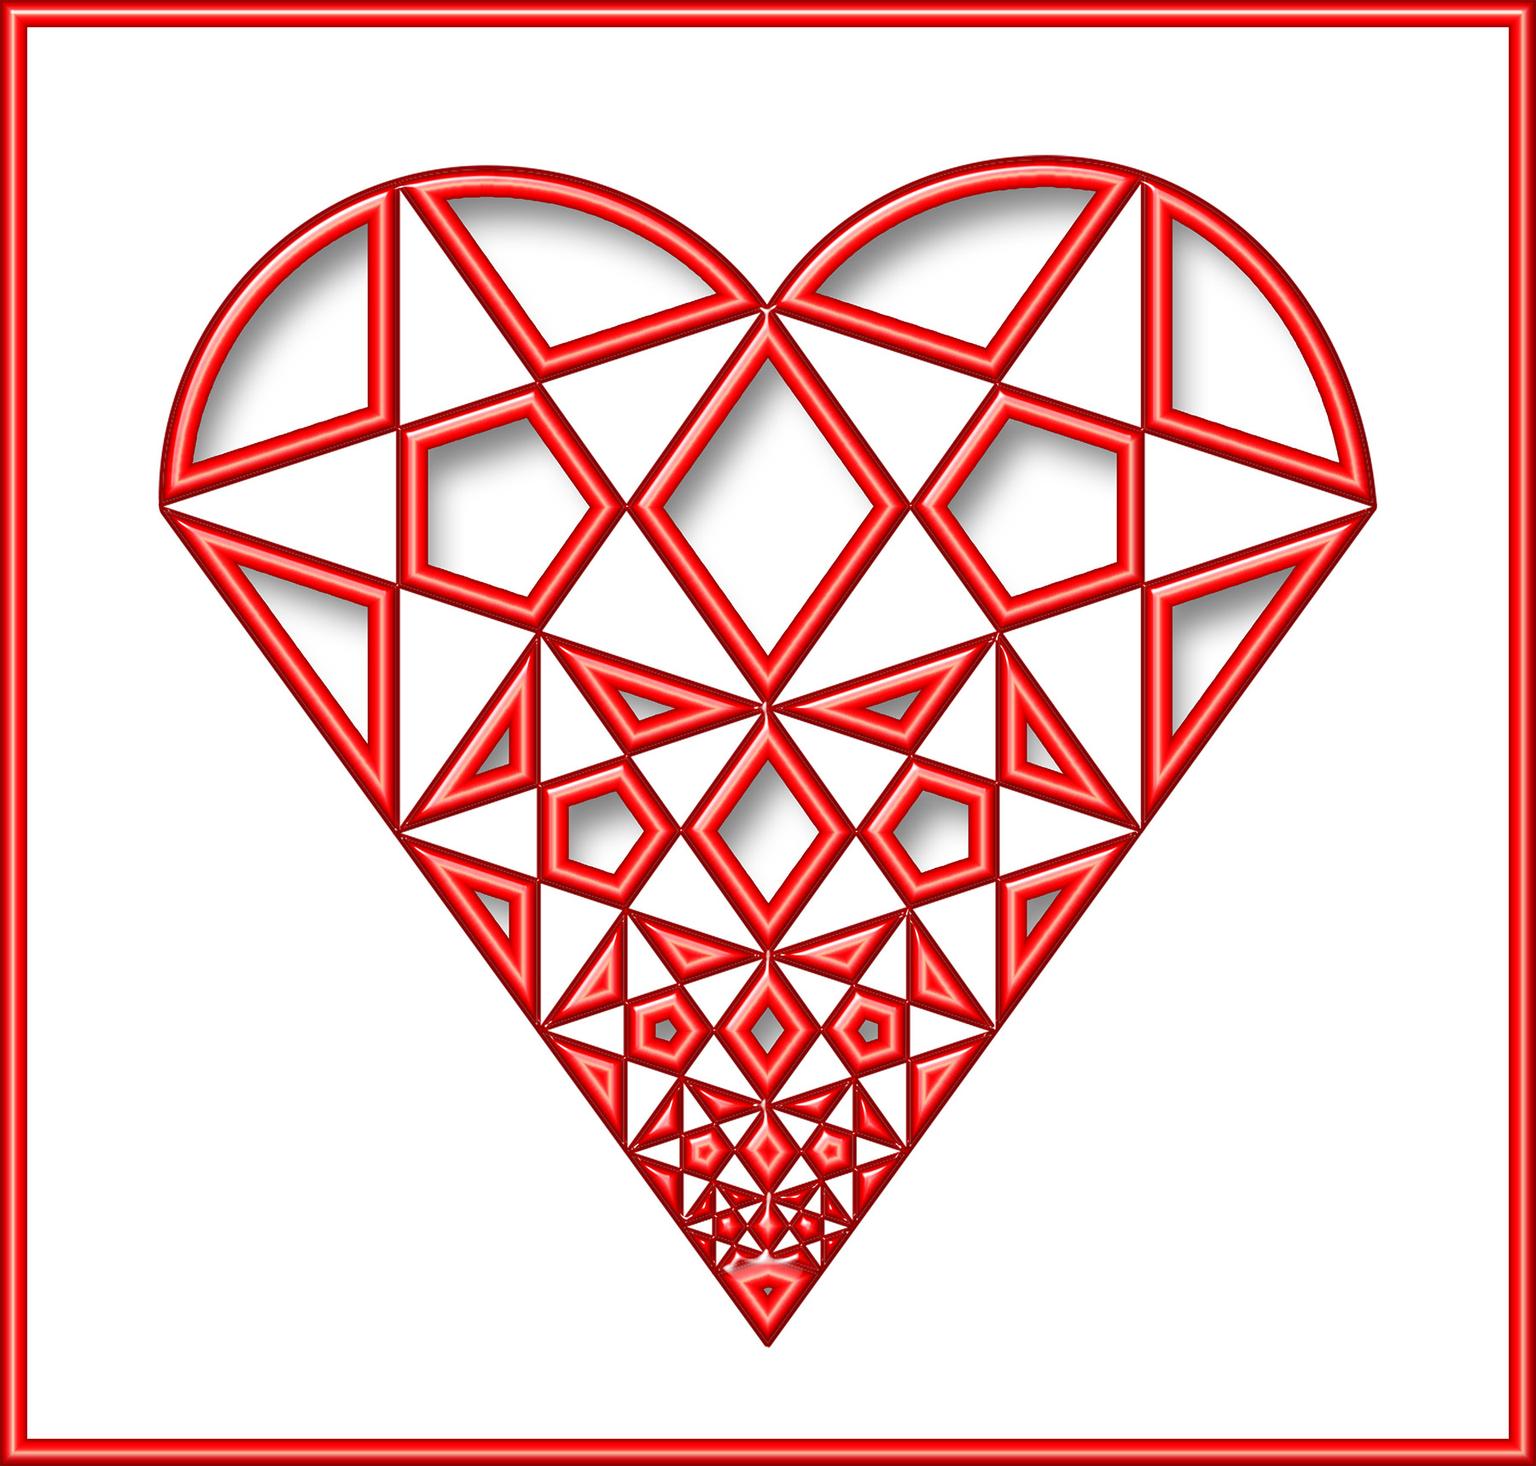 Image for entry 'Penrose Heart'